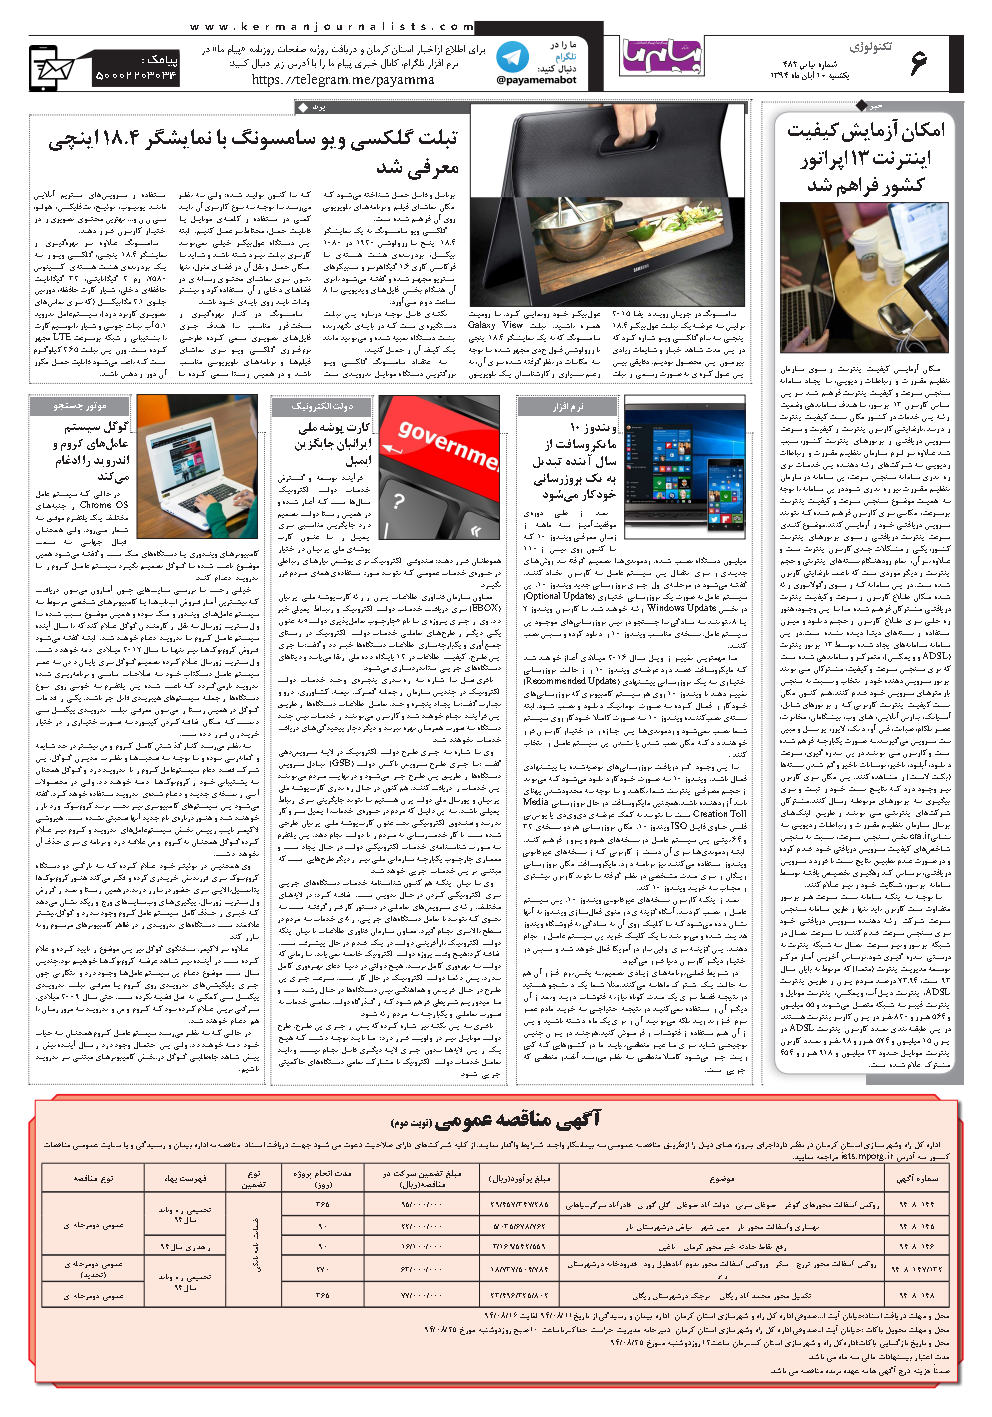 صفحه تکنولوژی شماره تکنولوژی روزنامه پیام ما